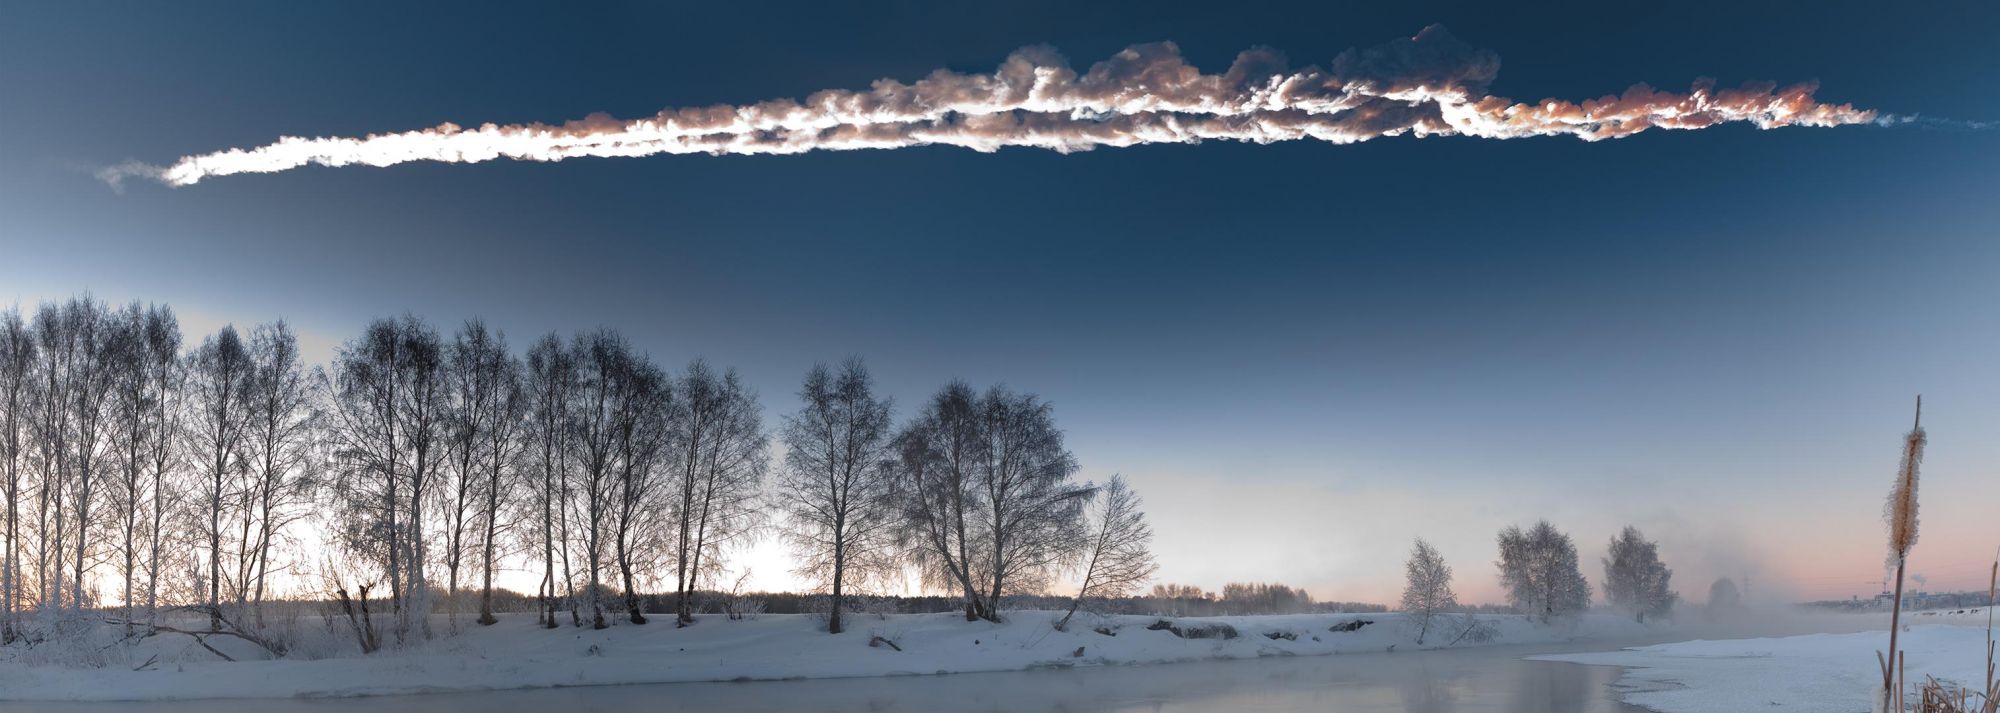 La traînée laissée par la météorite de Tcheliabinsk dans le ciel de Russie.&nbsp;© M. Ahmetvaleev